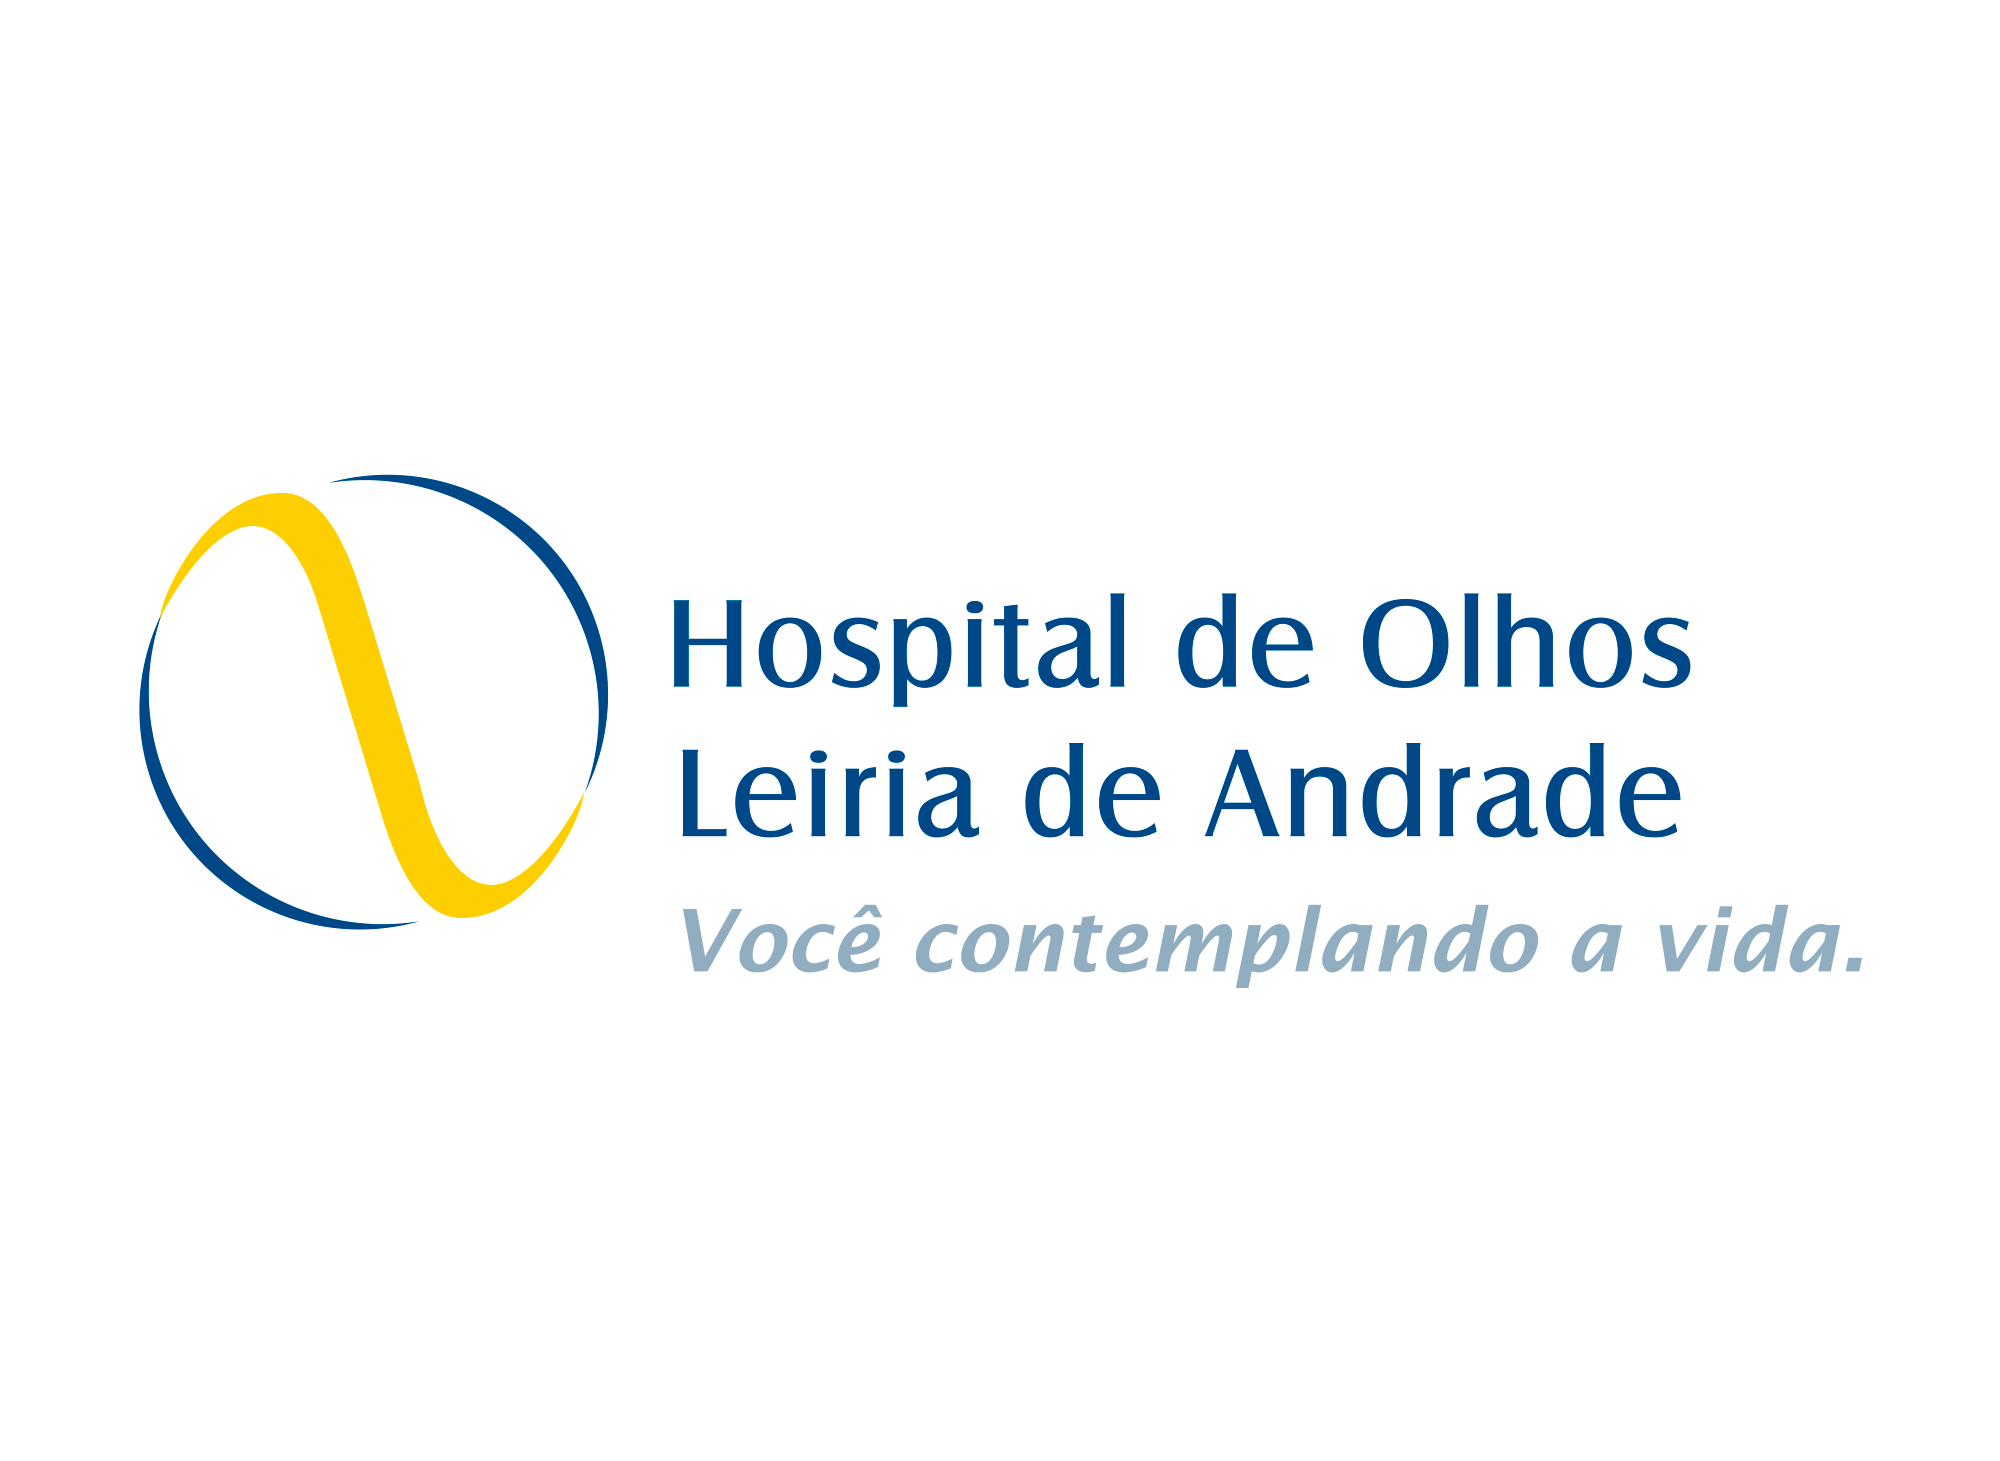 Hospital de Olhos Leiria de Andrade